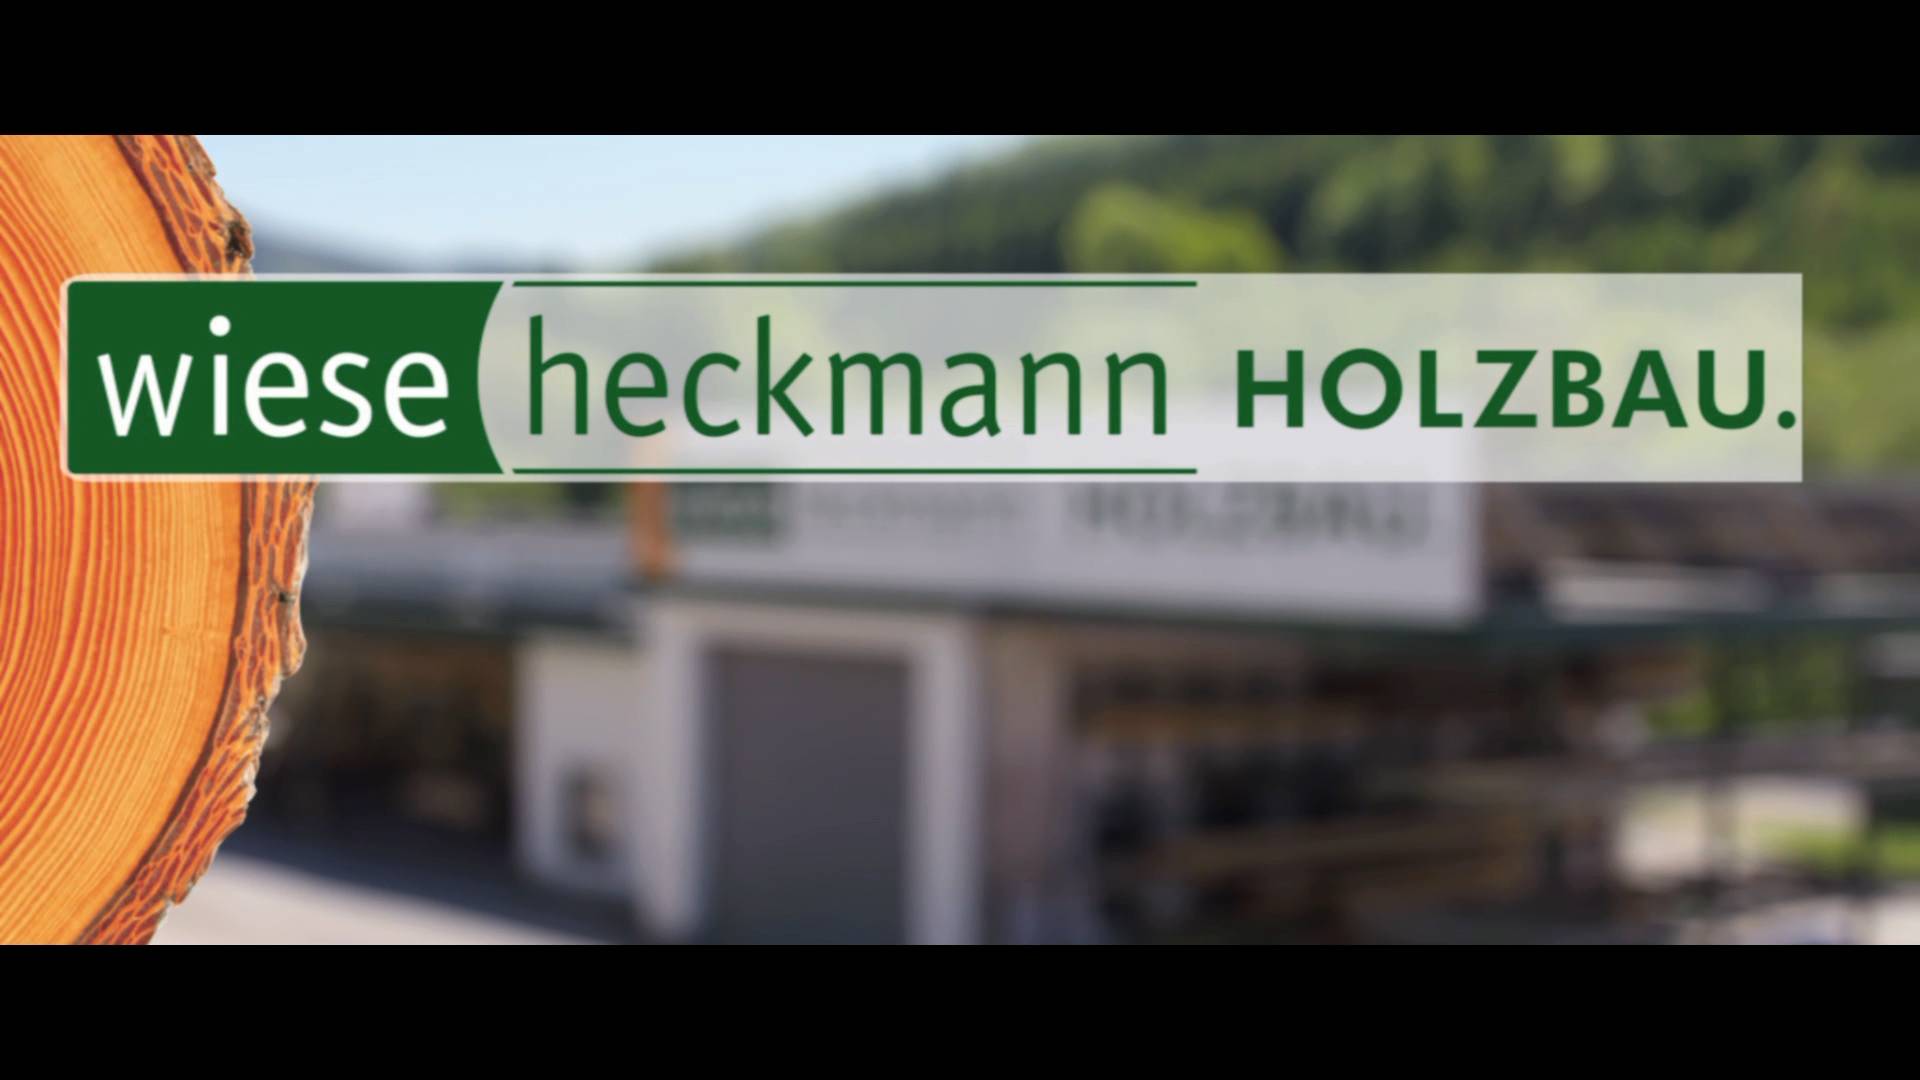 Wiese und Heckmann GmbH - HOLZBAU.